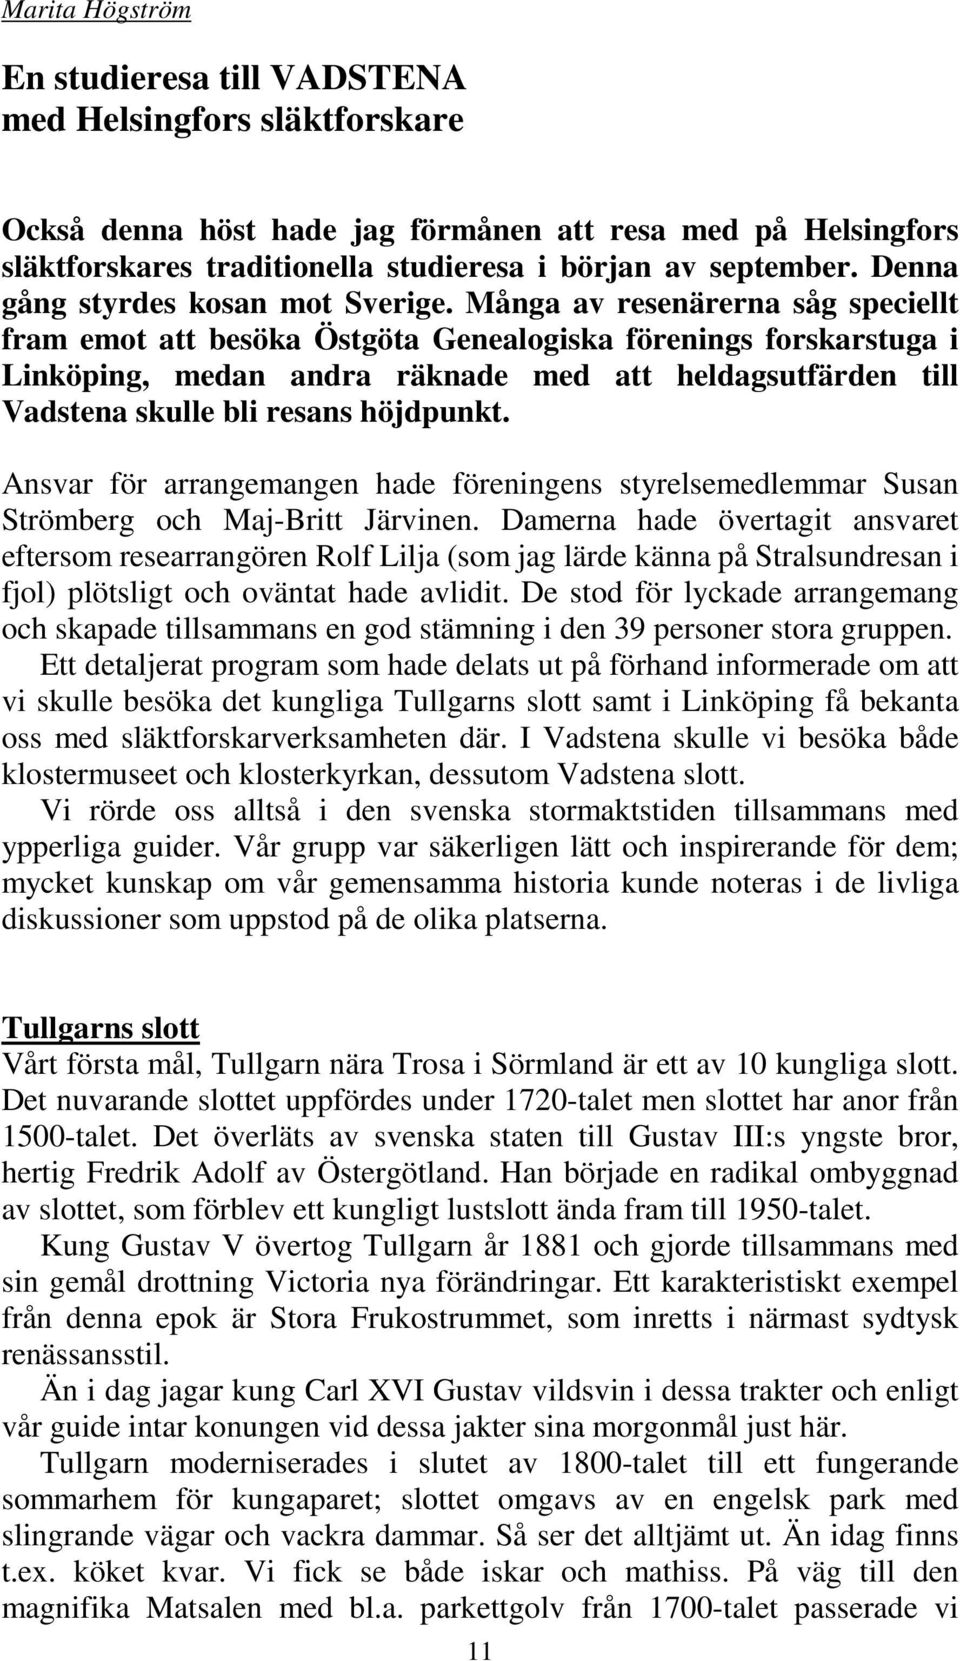 Många av resenärerna såg speciellt fram emot att besöka Östgöta Genealogiska förenings forskarstuga i Linköping, medan andra räknade med att heldagsutfärden till Vadstena skulle bli resans höjdpunkt.